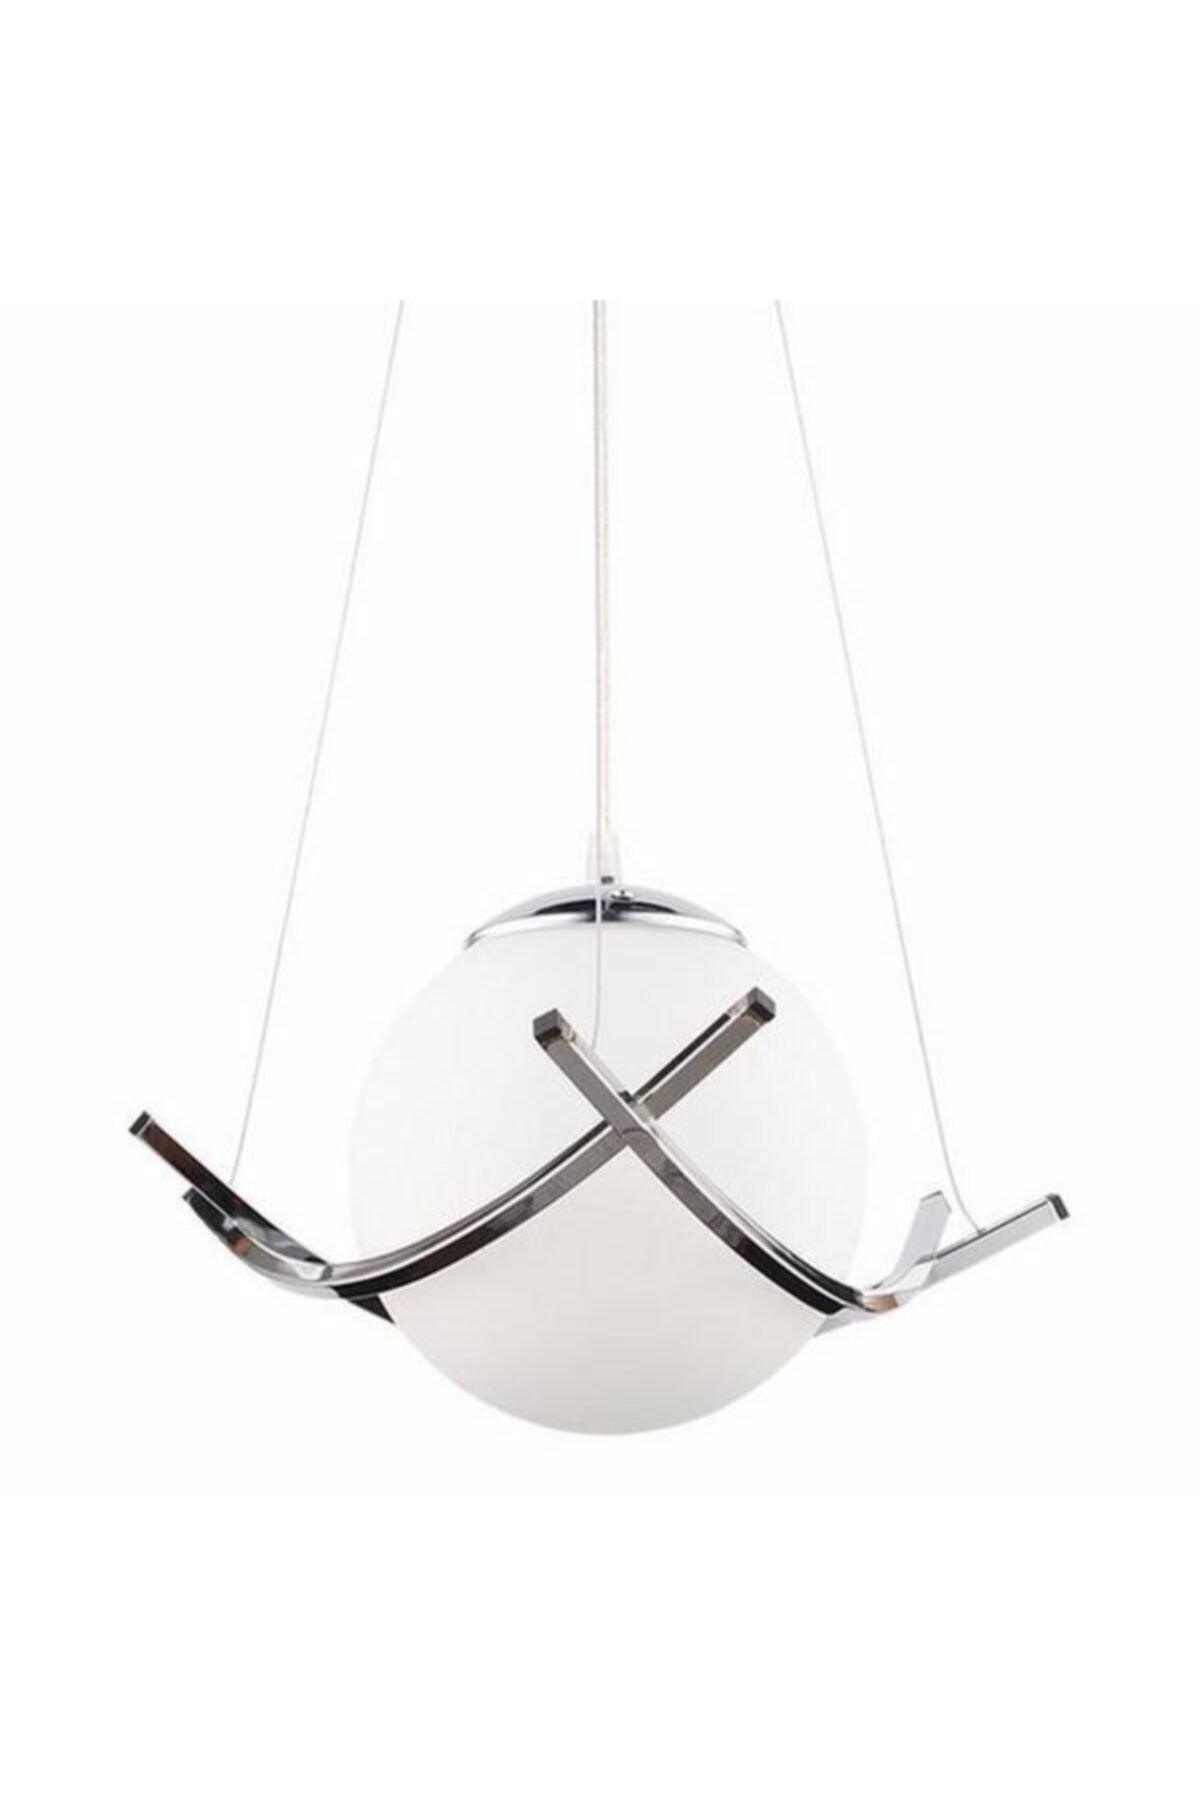 Nisa Luce Modern Single Pendant Lamp - Chrome - Swordslife